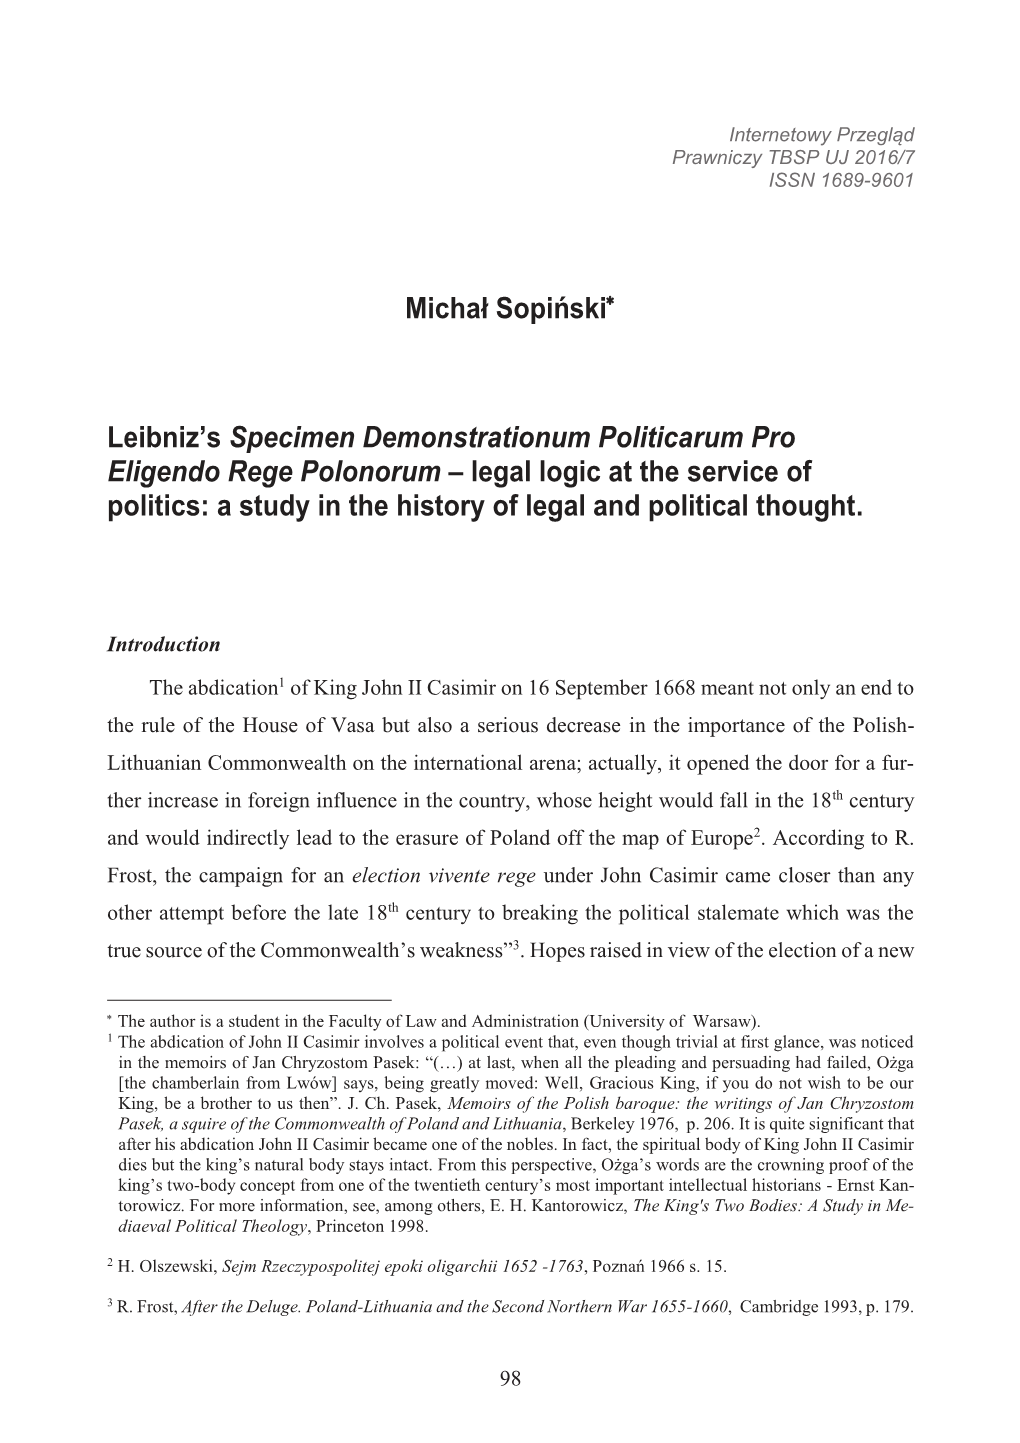 Leibniz's Specimen Demonstrationum Politicarum Pro Eligendo Rege